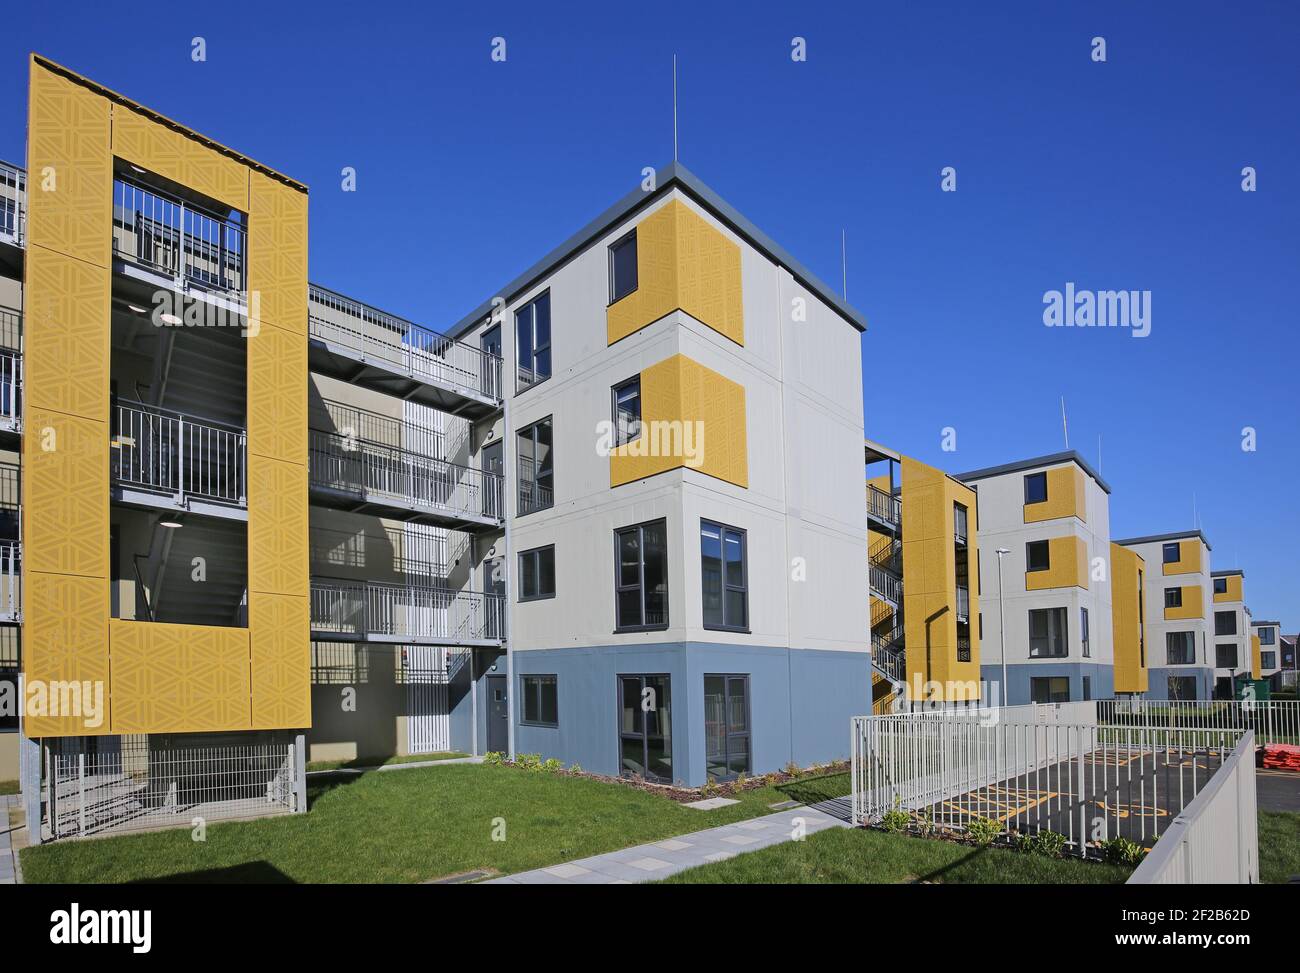 Sviluppo di nuovi alloggi a Dagenham, Londra, Regno Unito. Costruita in modo rapido ed economico utilizzando una struttura modulare per fornire alloggio ai senzatetto. Foto Stock